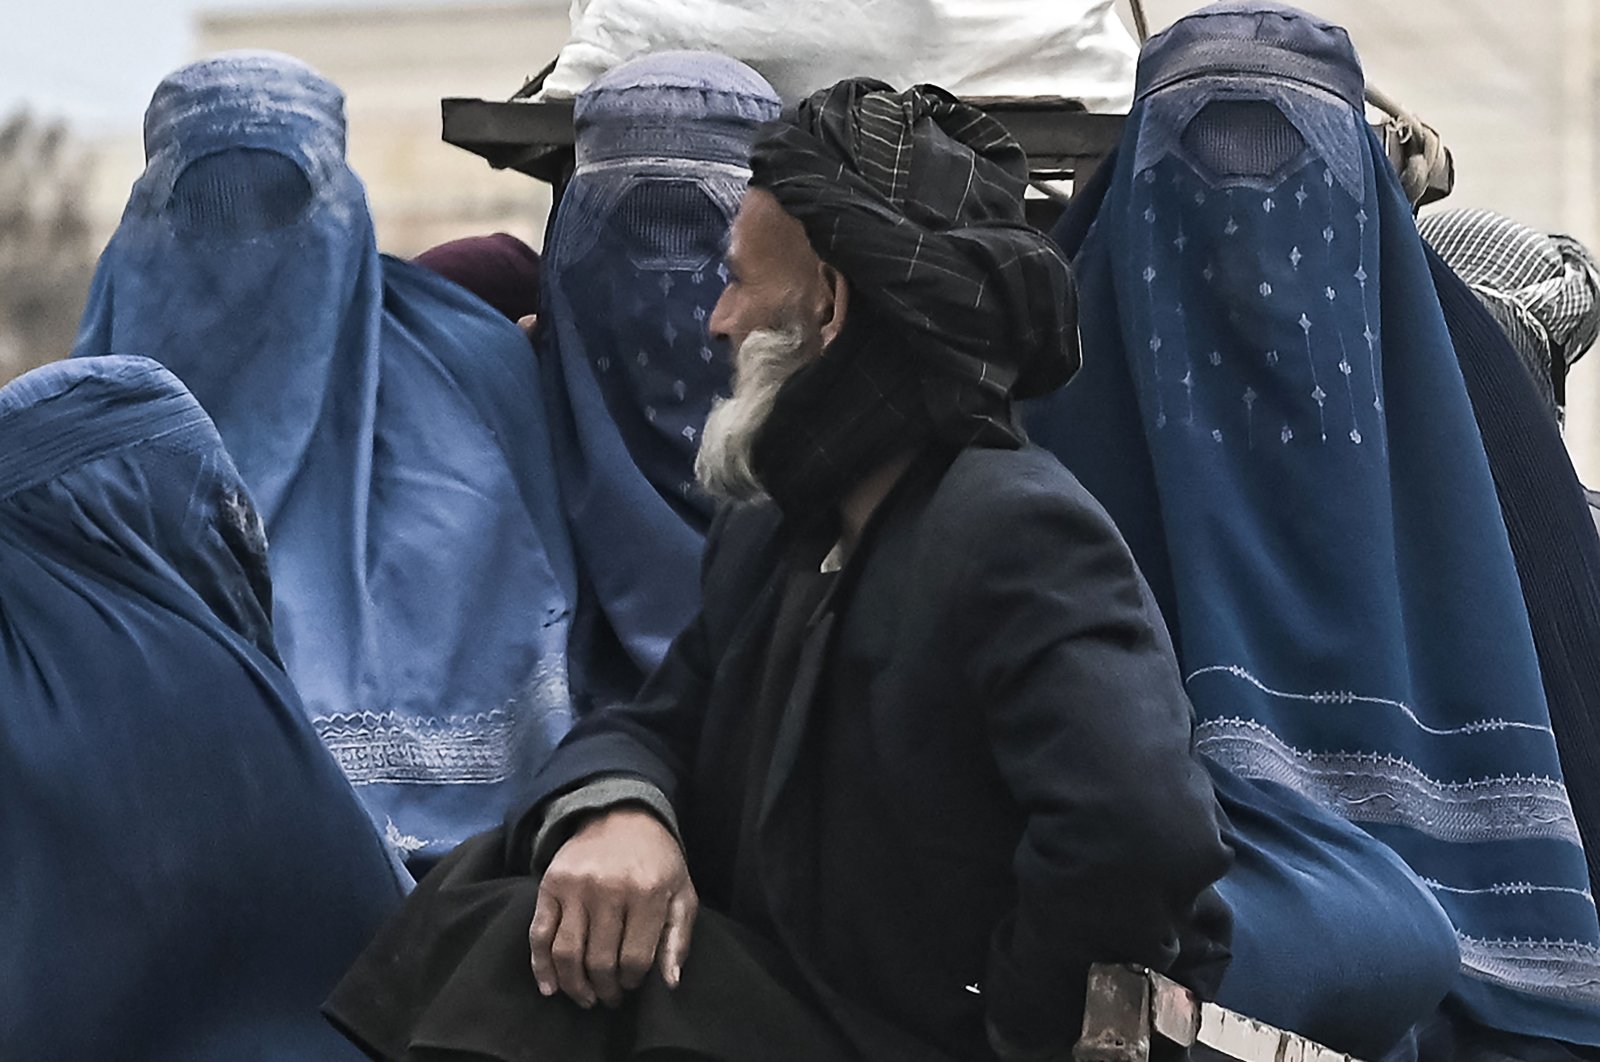 Taliban melarang perjalanan bagi wanita Afghanistan tanpa pendamping pria